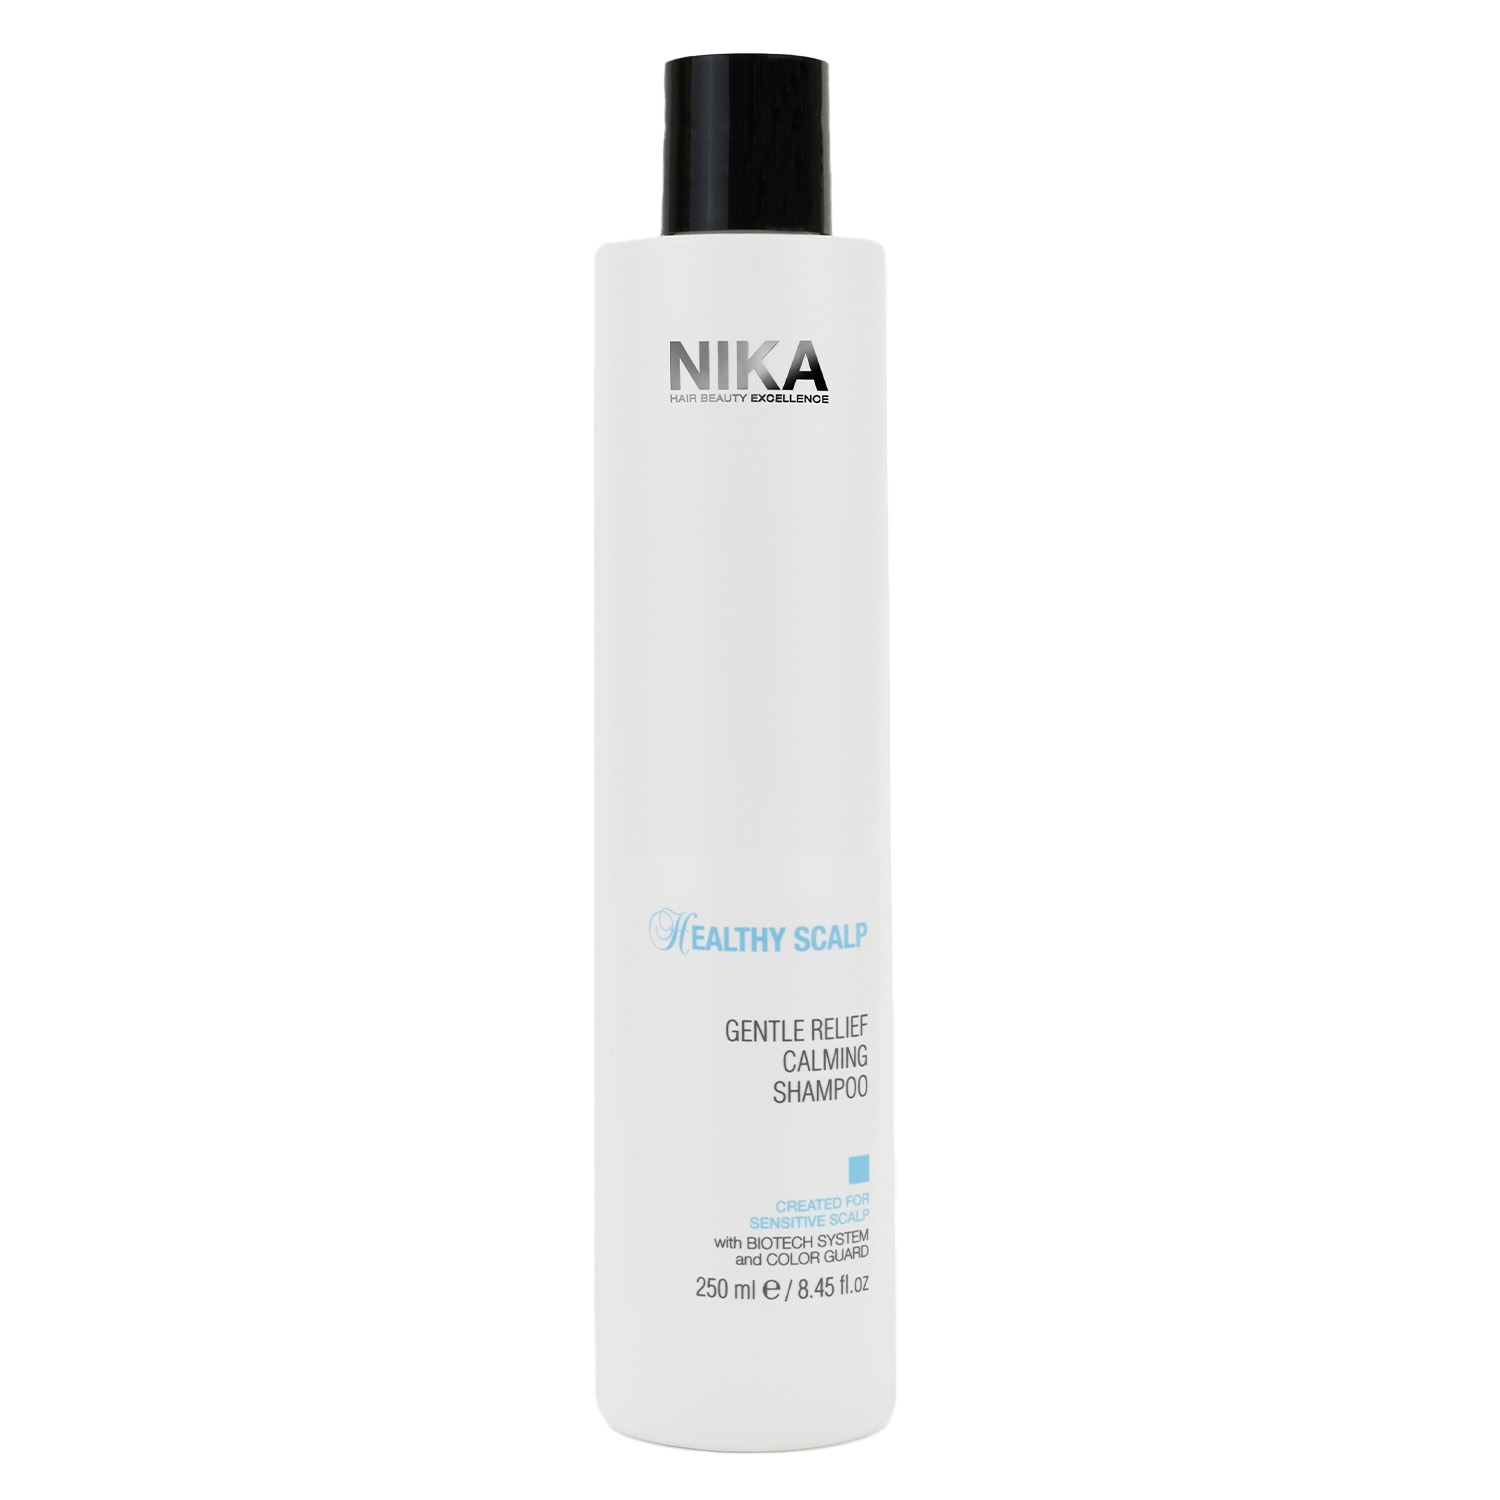 Produktbild von Healthy Scalp - Gentle Relief Calming Shampoo